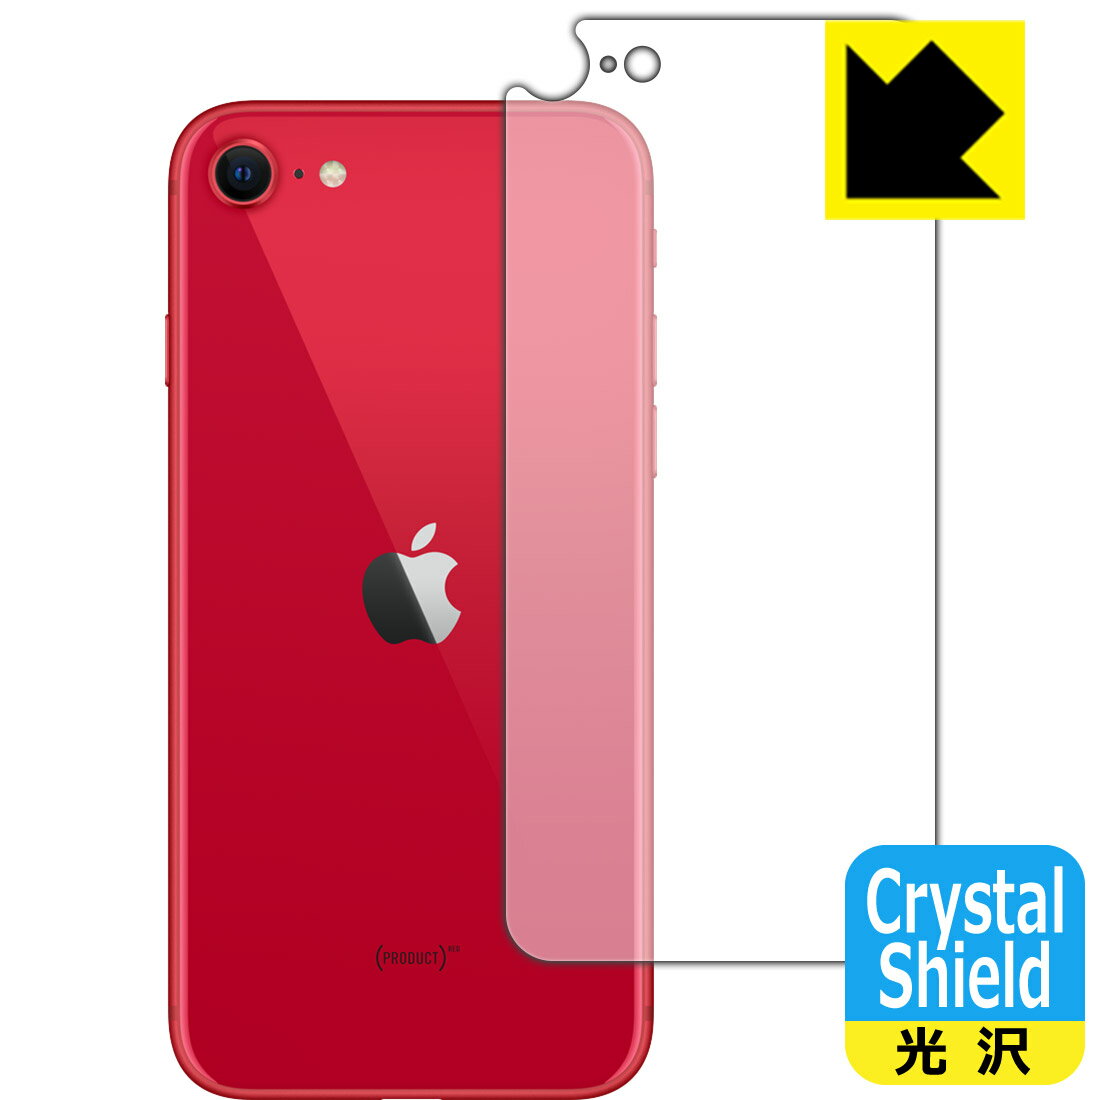 Crystal Shield iPhone SE (第2世代) 背面のみ 【J型】 (3枚セット) 日本製 自社製造直販